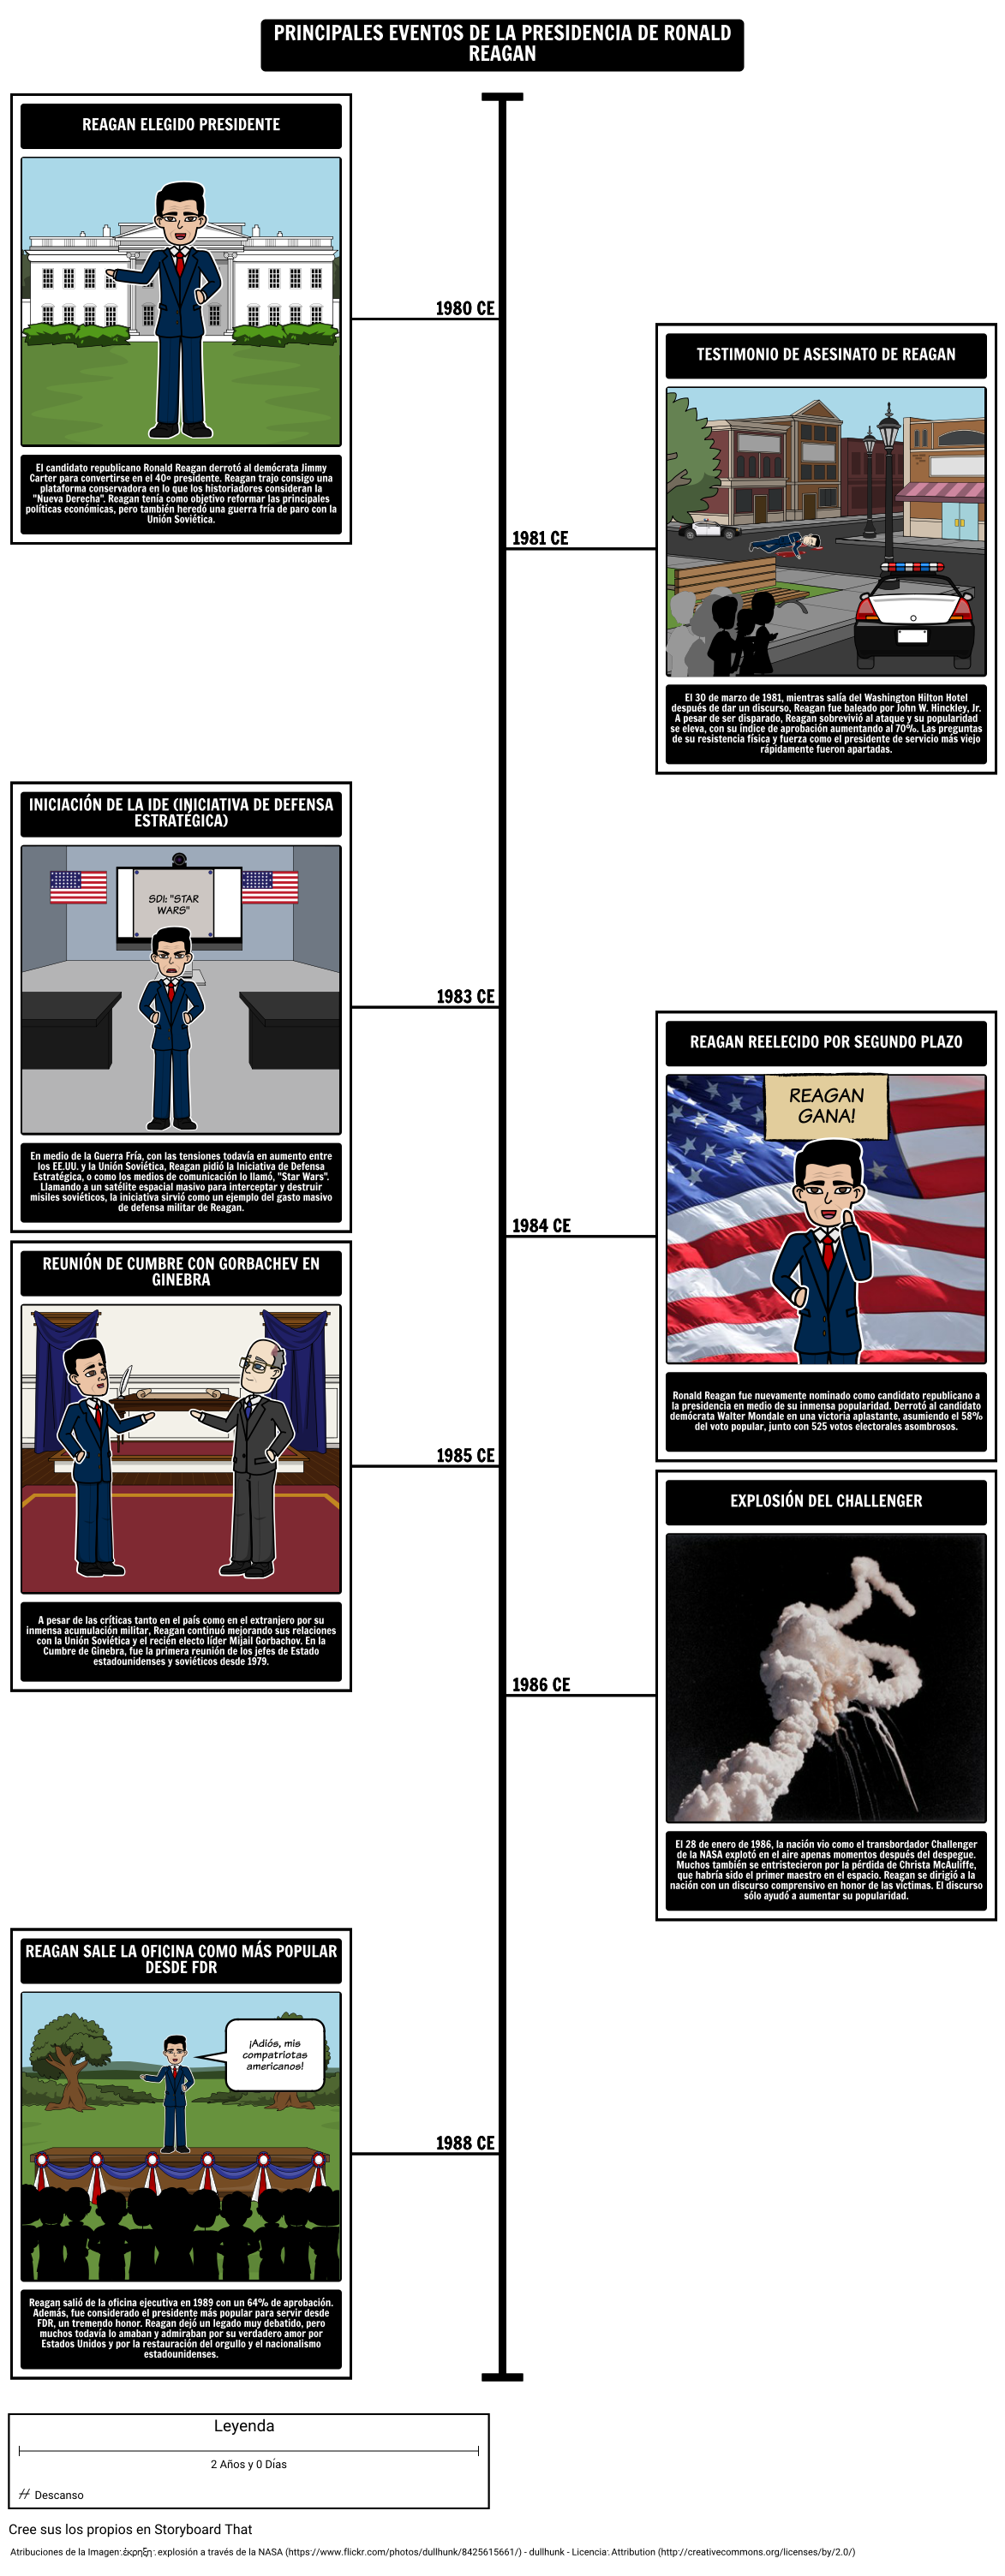 cronolog-a-de-la-presidencia-reagan-storyboard